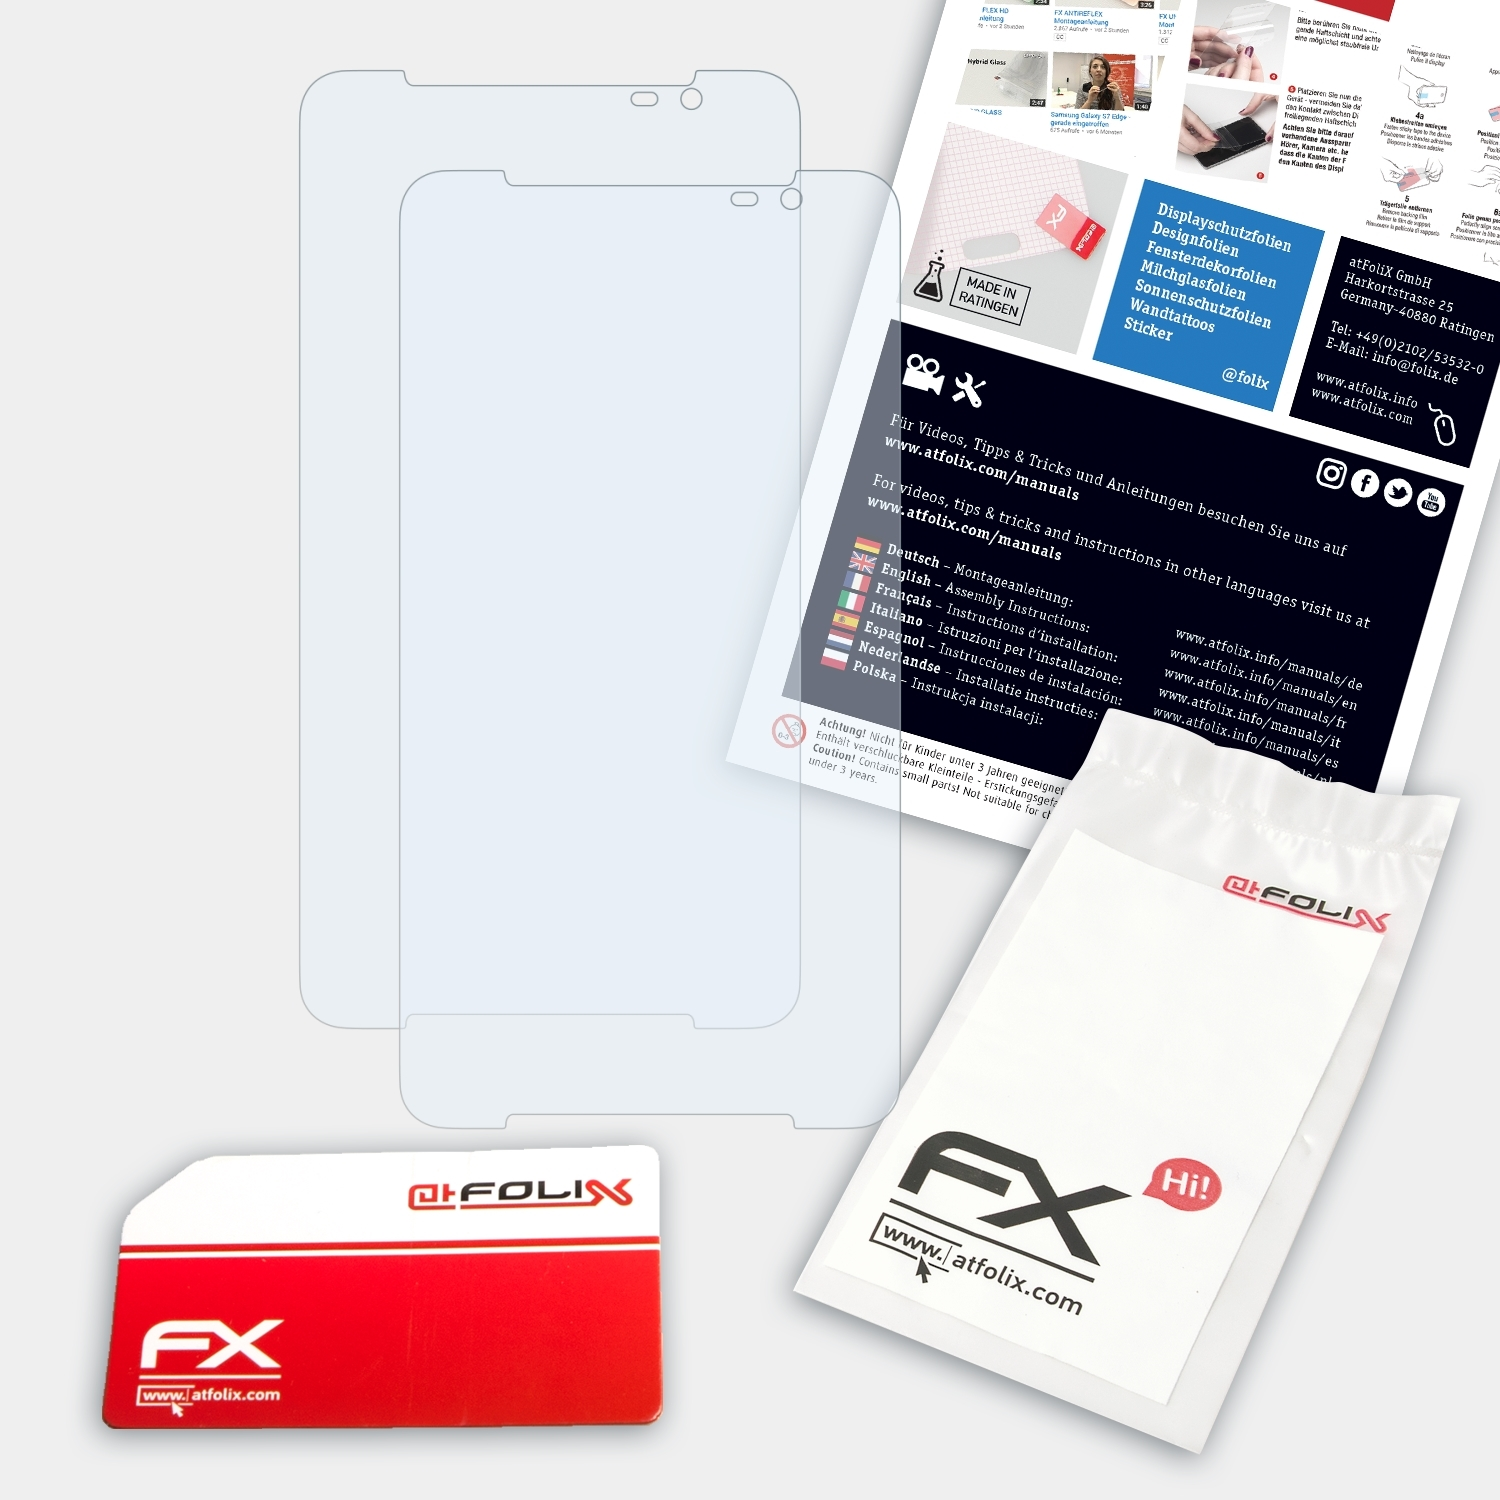 ATFOLIX 2x FX-Clear Displayschutz(für Acer (A1-724)) Talk S Iconia